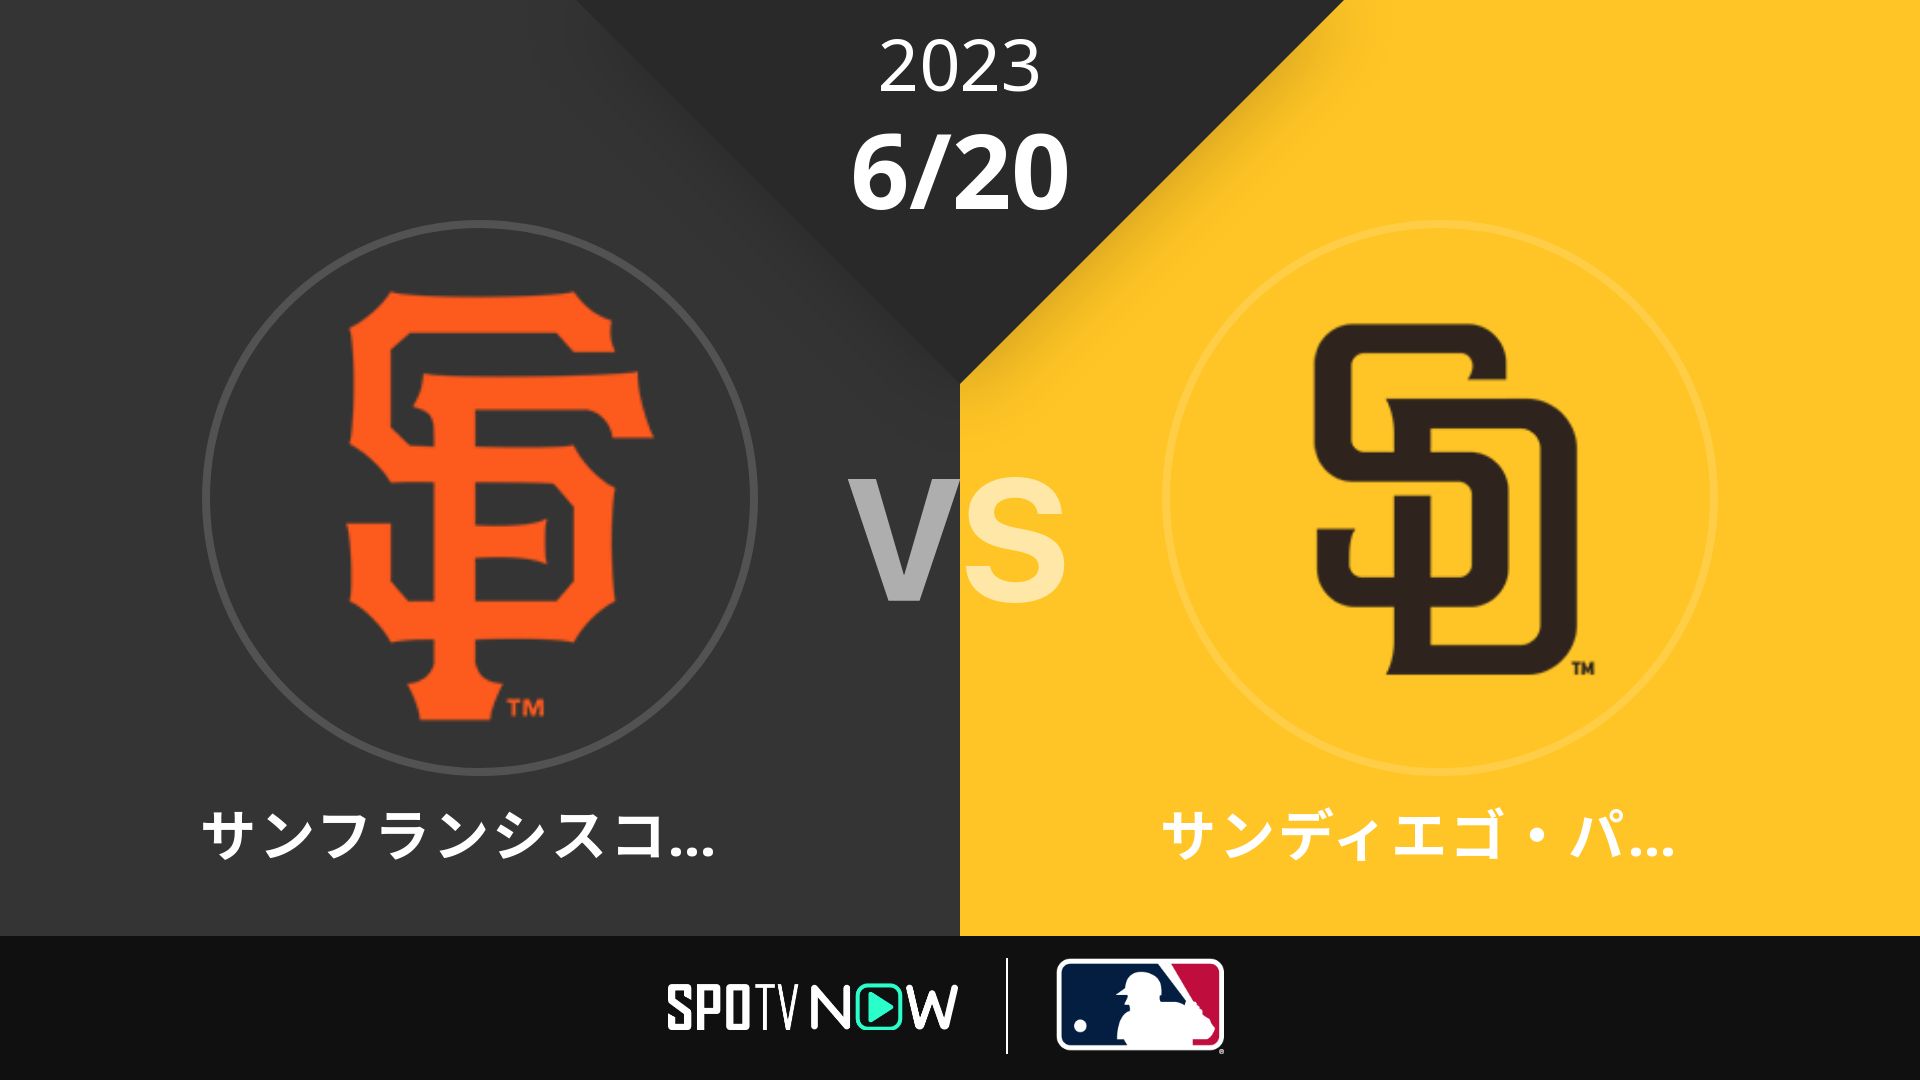 2023/6/20 ジャイアンツ vs パドレス [MLB]